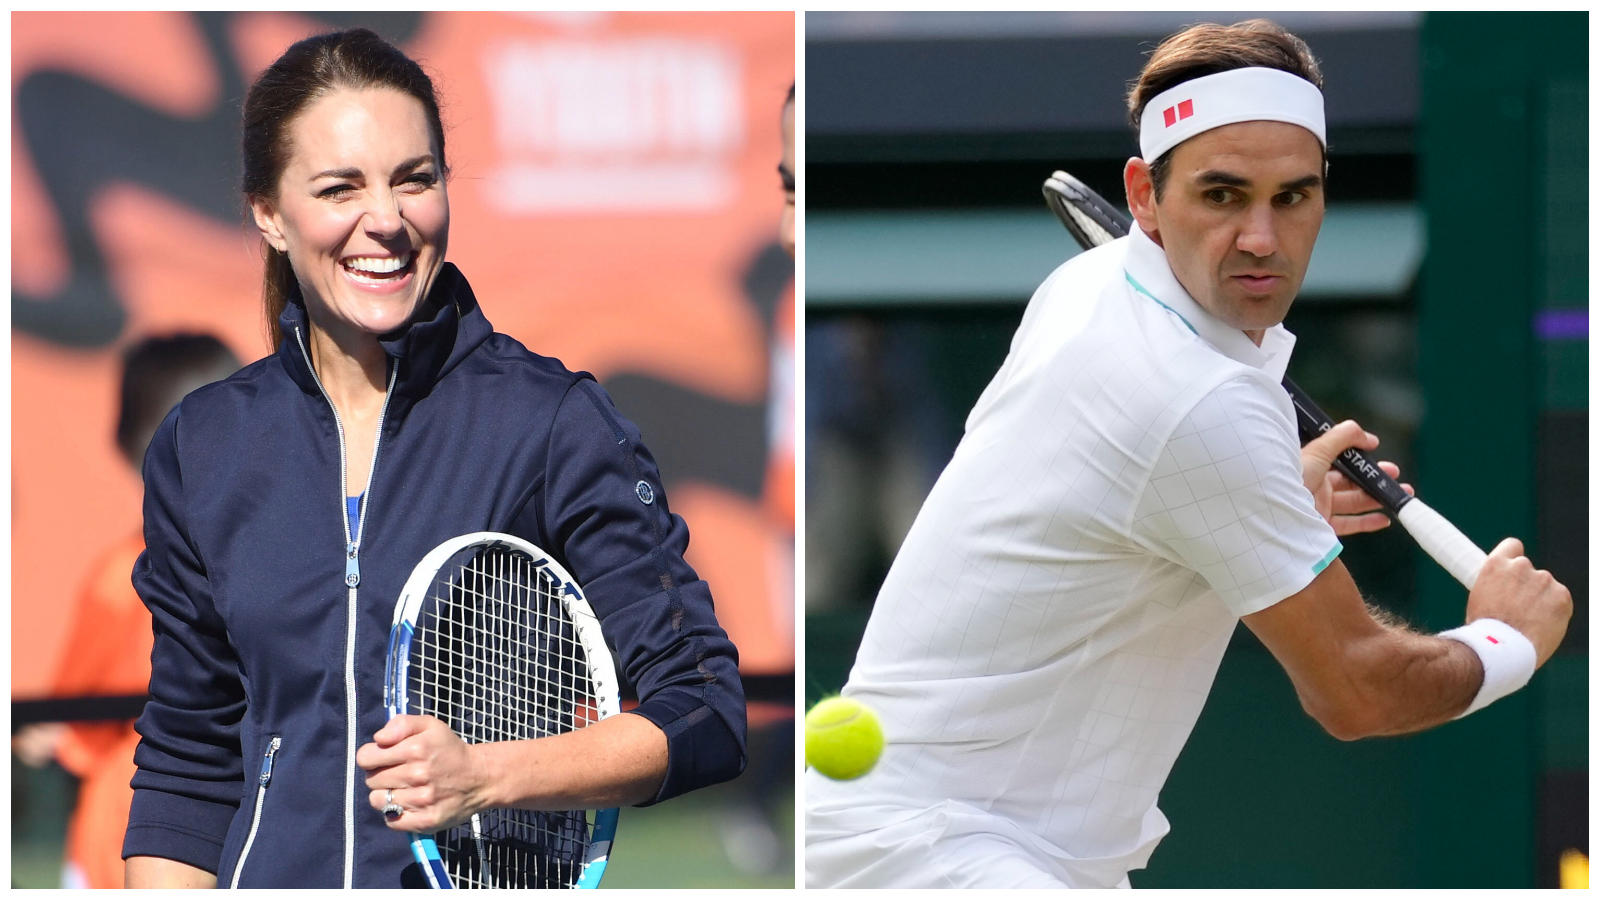 Herzogin Kate wird im September gemeinsam mit dem Roger Federer auf dem Tennis-Platz stehen.